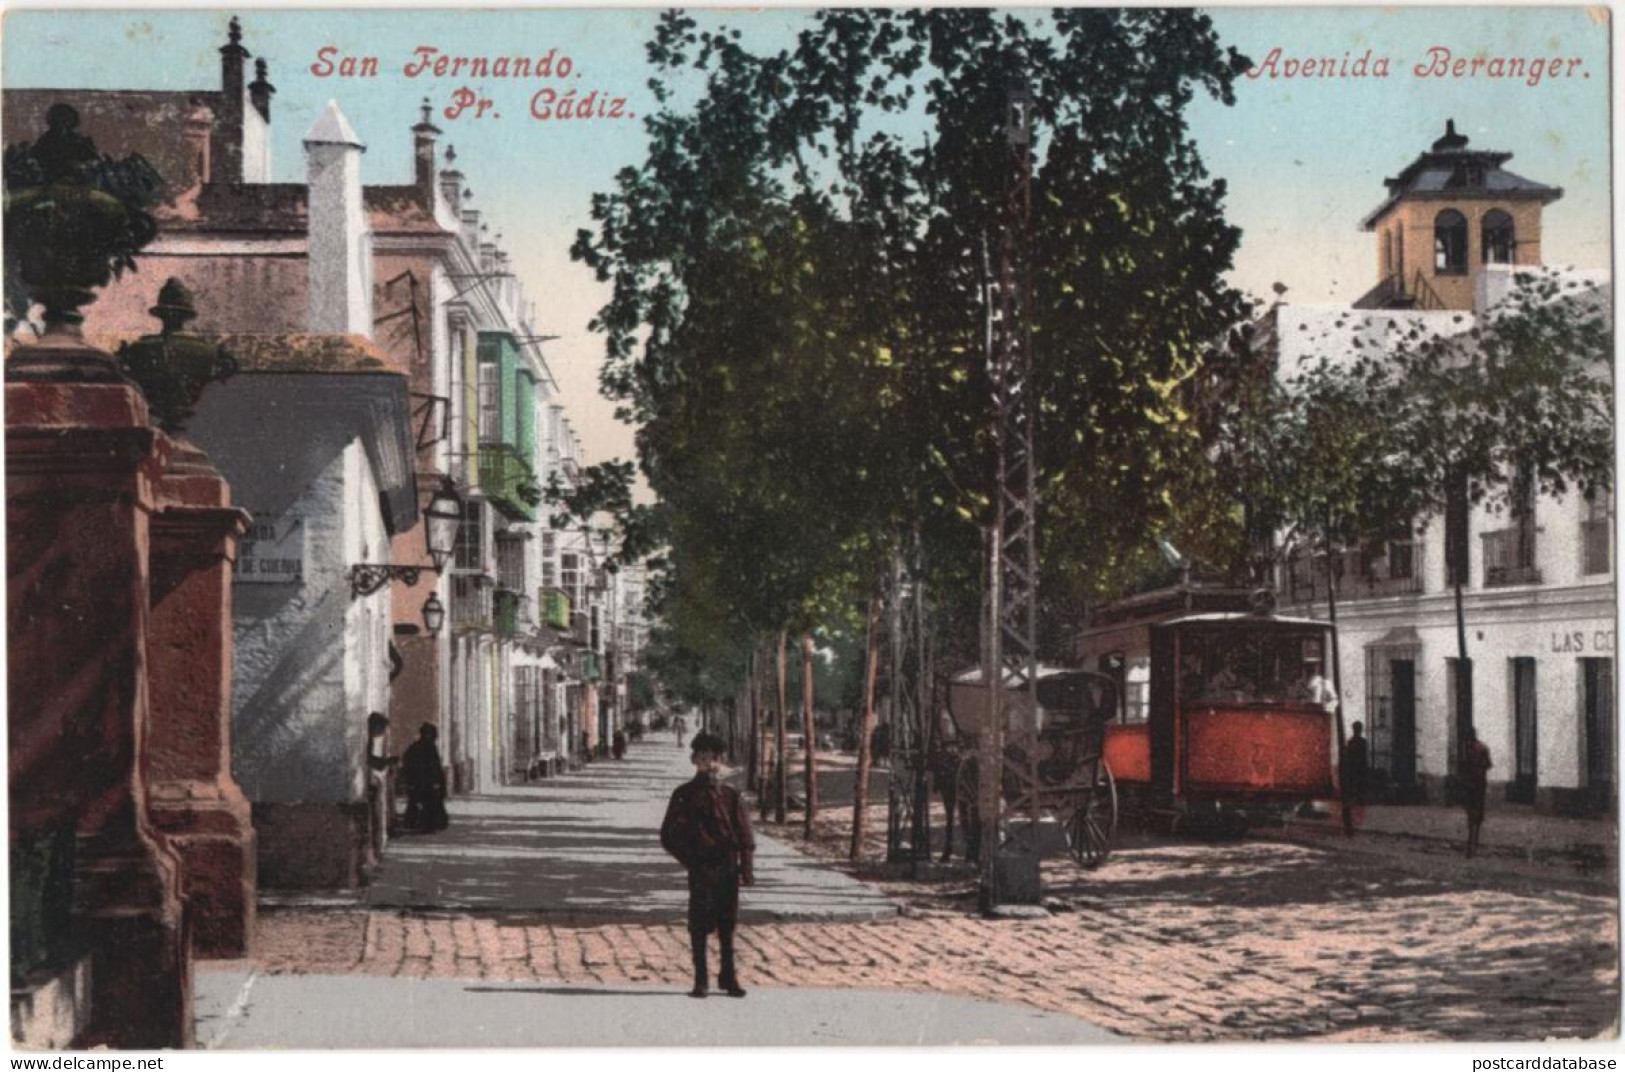 San Fernando - Avenida Beranger - & Tram - Trinidad